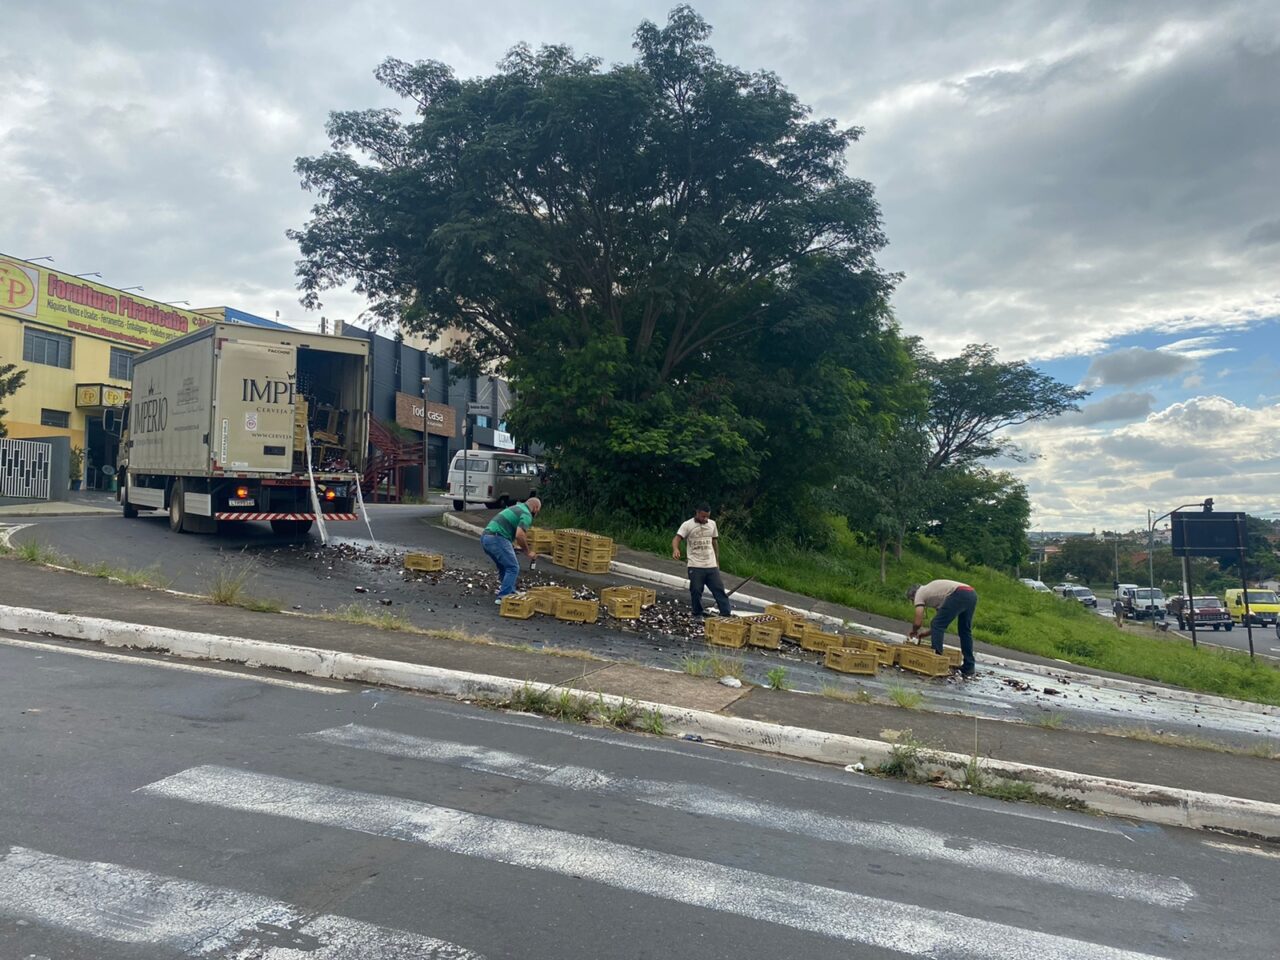 Caminhão de cerveja derruba carga na Avenida Antônio Ometto, em Limeira